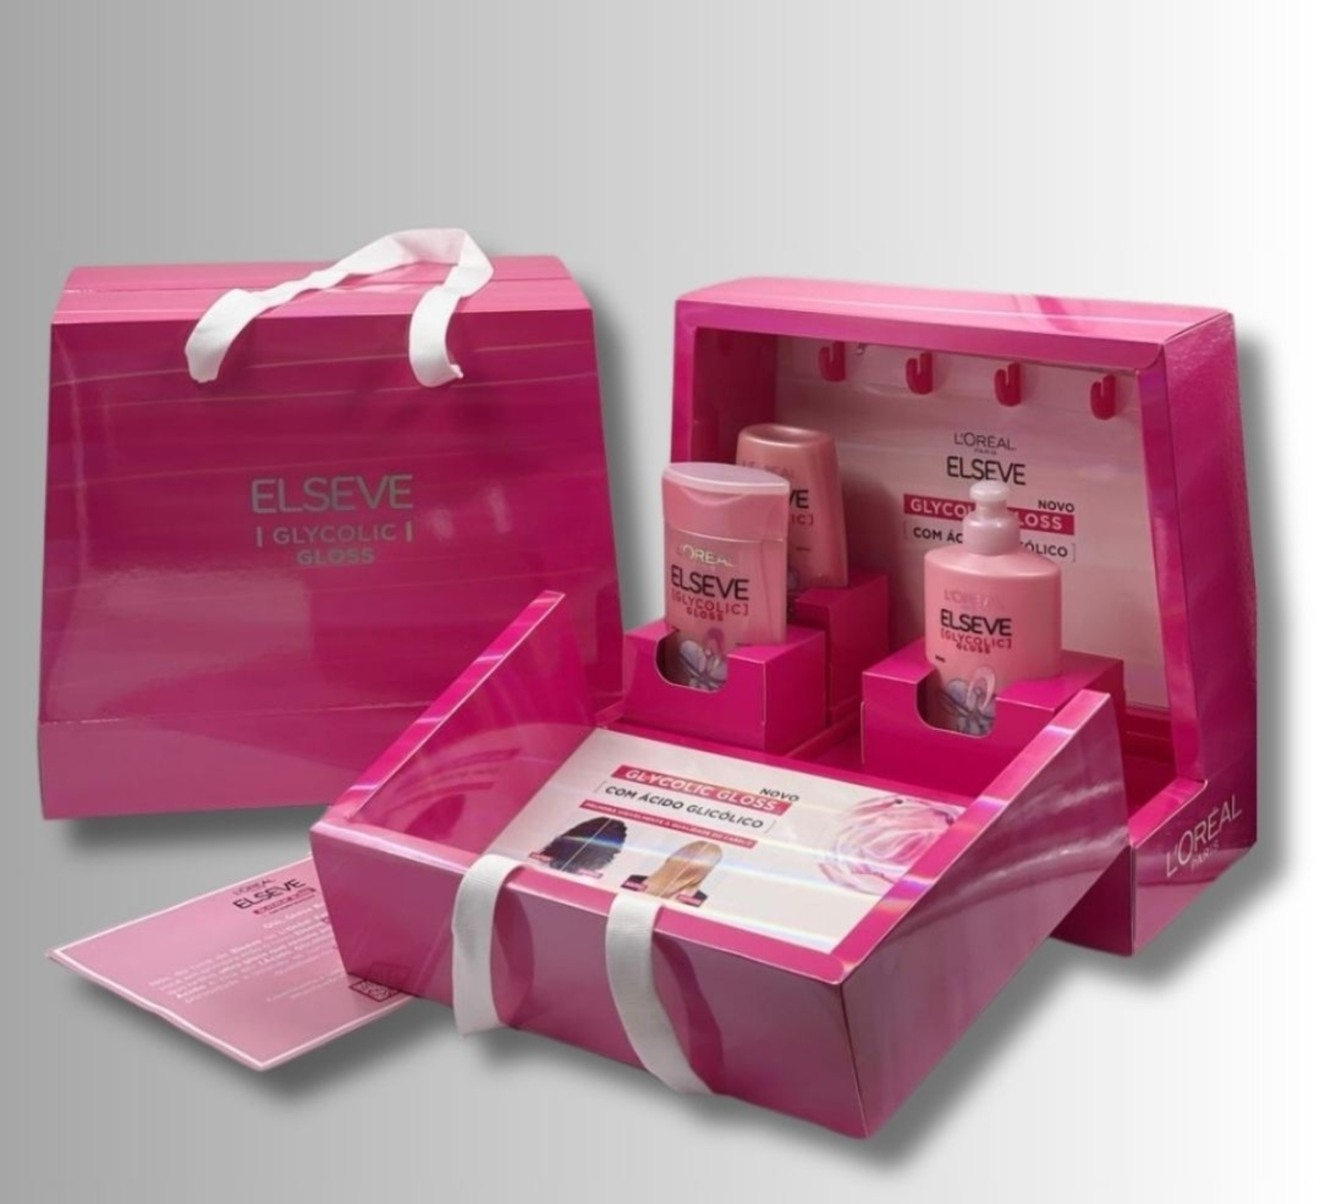 Os aguardados press kits da linha Elseve Glycolic Gloss, da L'Oréal Paris, estão prontos para serem enviados para influenciadores e e-commerce em todo o Brasil, marcando o lançamento do mais recente sucesso de vendas da marca. Para dar vida a esses kits, a Fluxxo foi escolhida como a agência parceira.